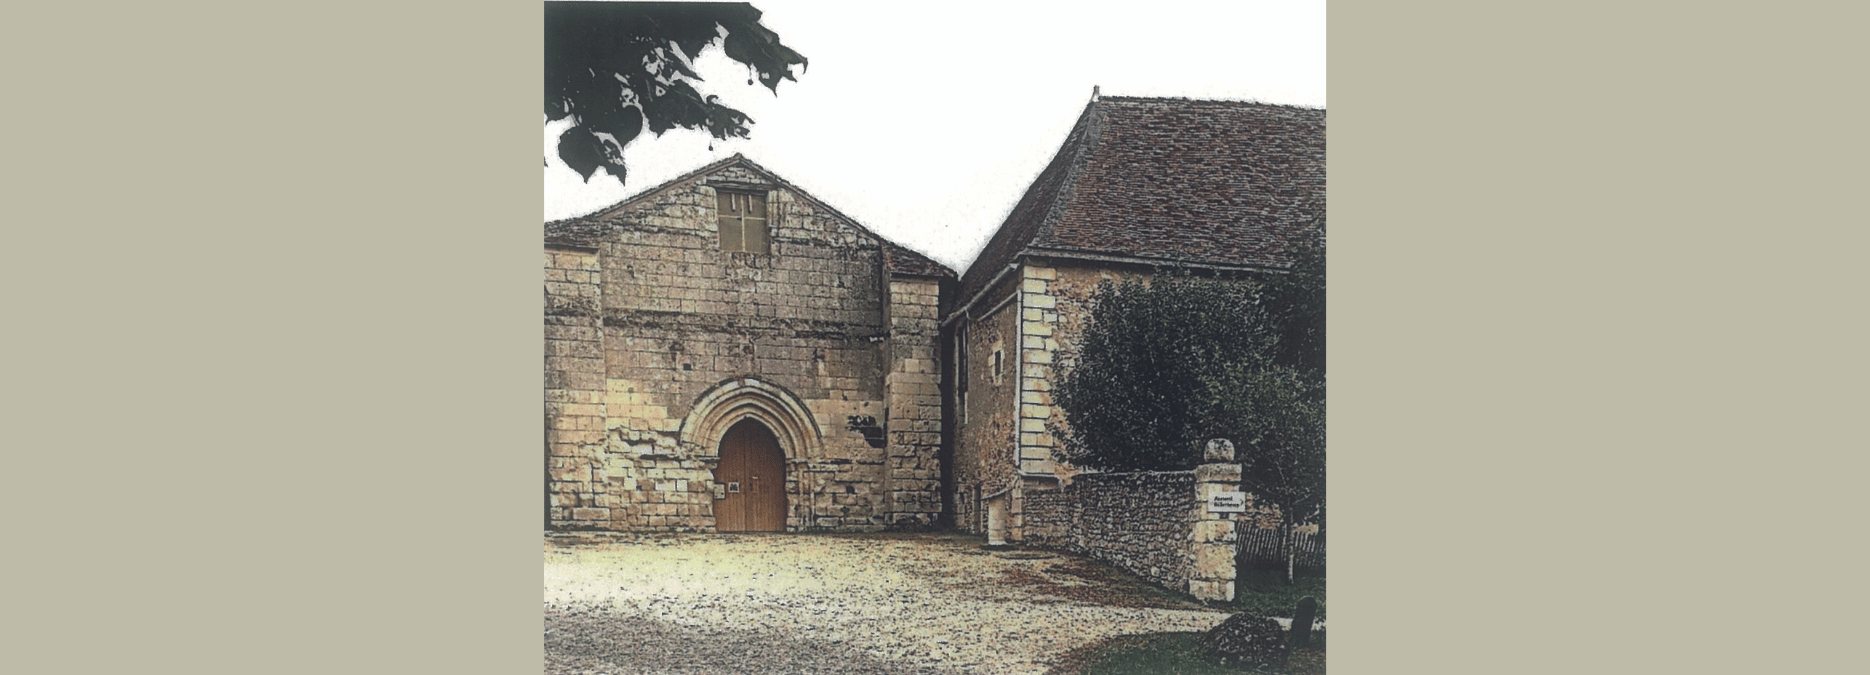 L’abbaye royale Notre-Dame de l’Étoile en Poitou, 1124-1791 – Entretien avec François Joyaux